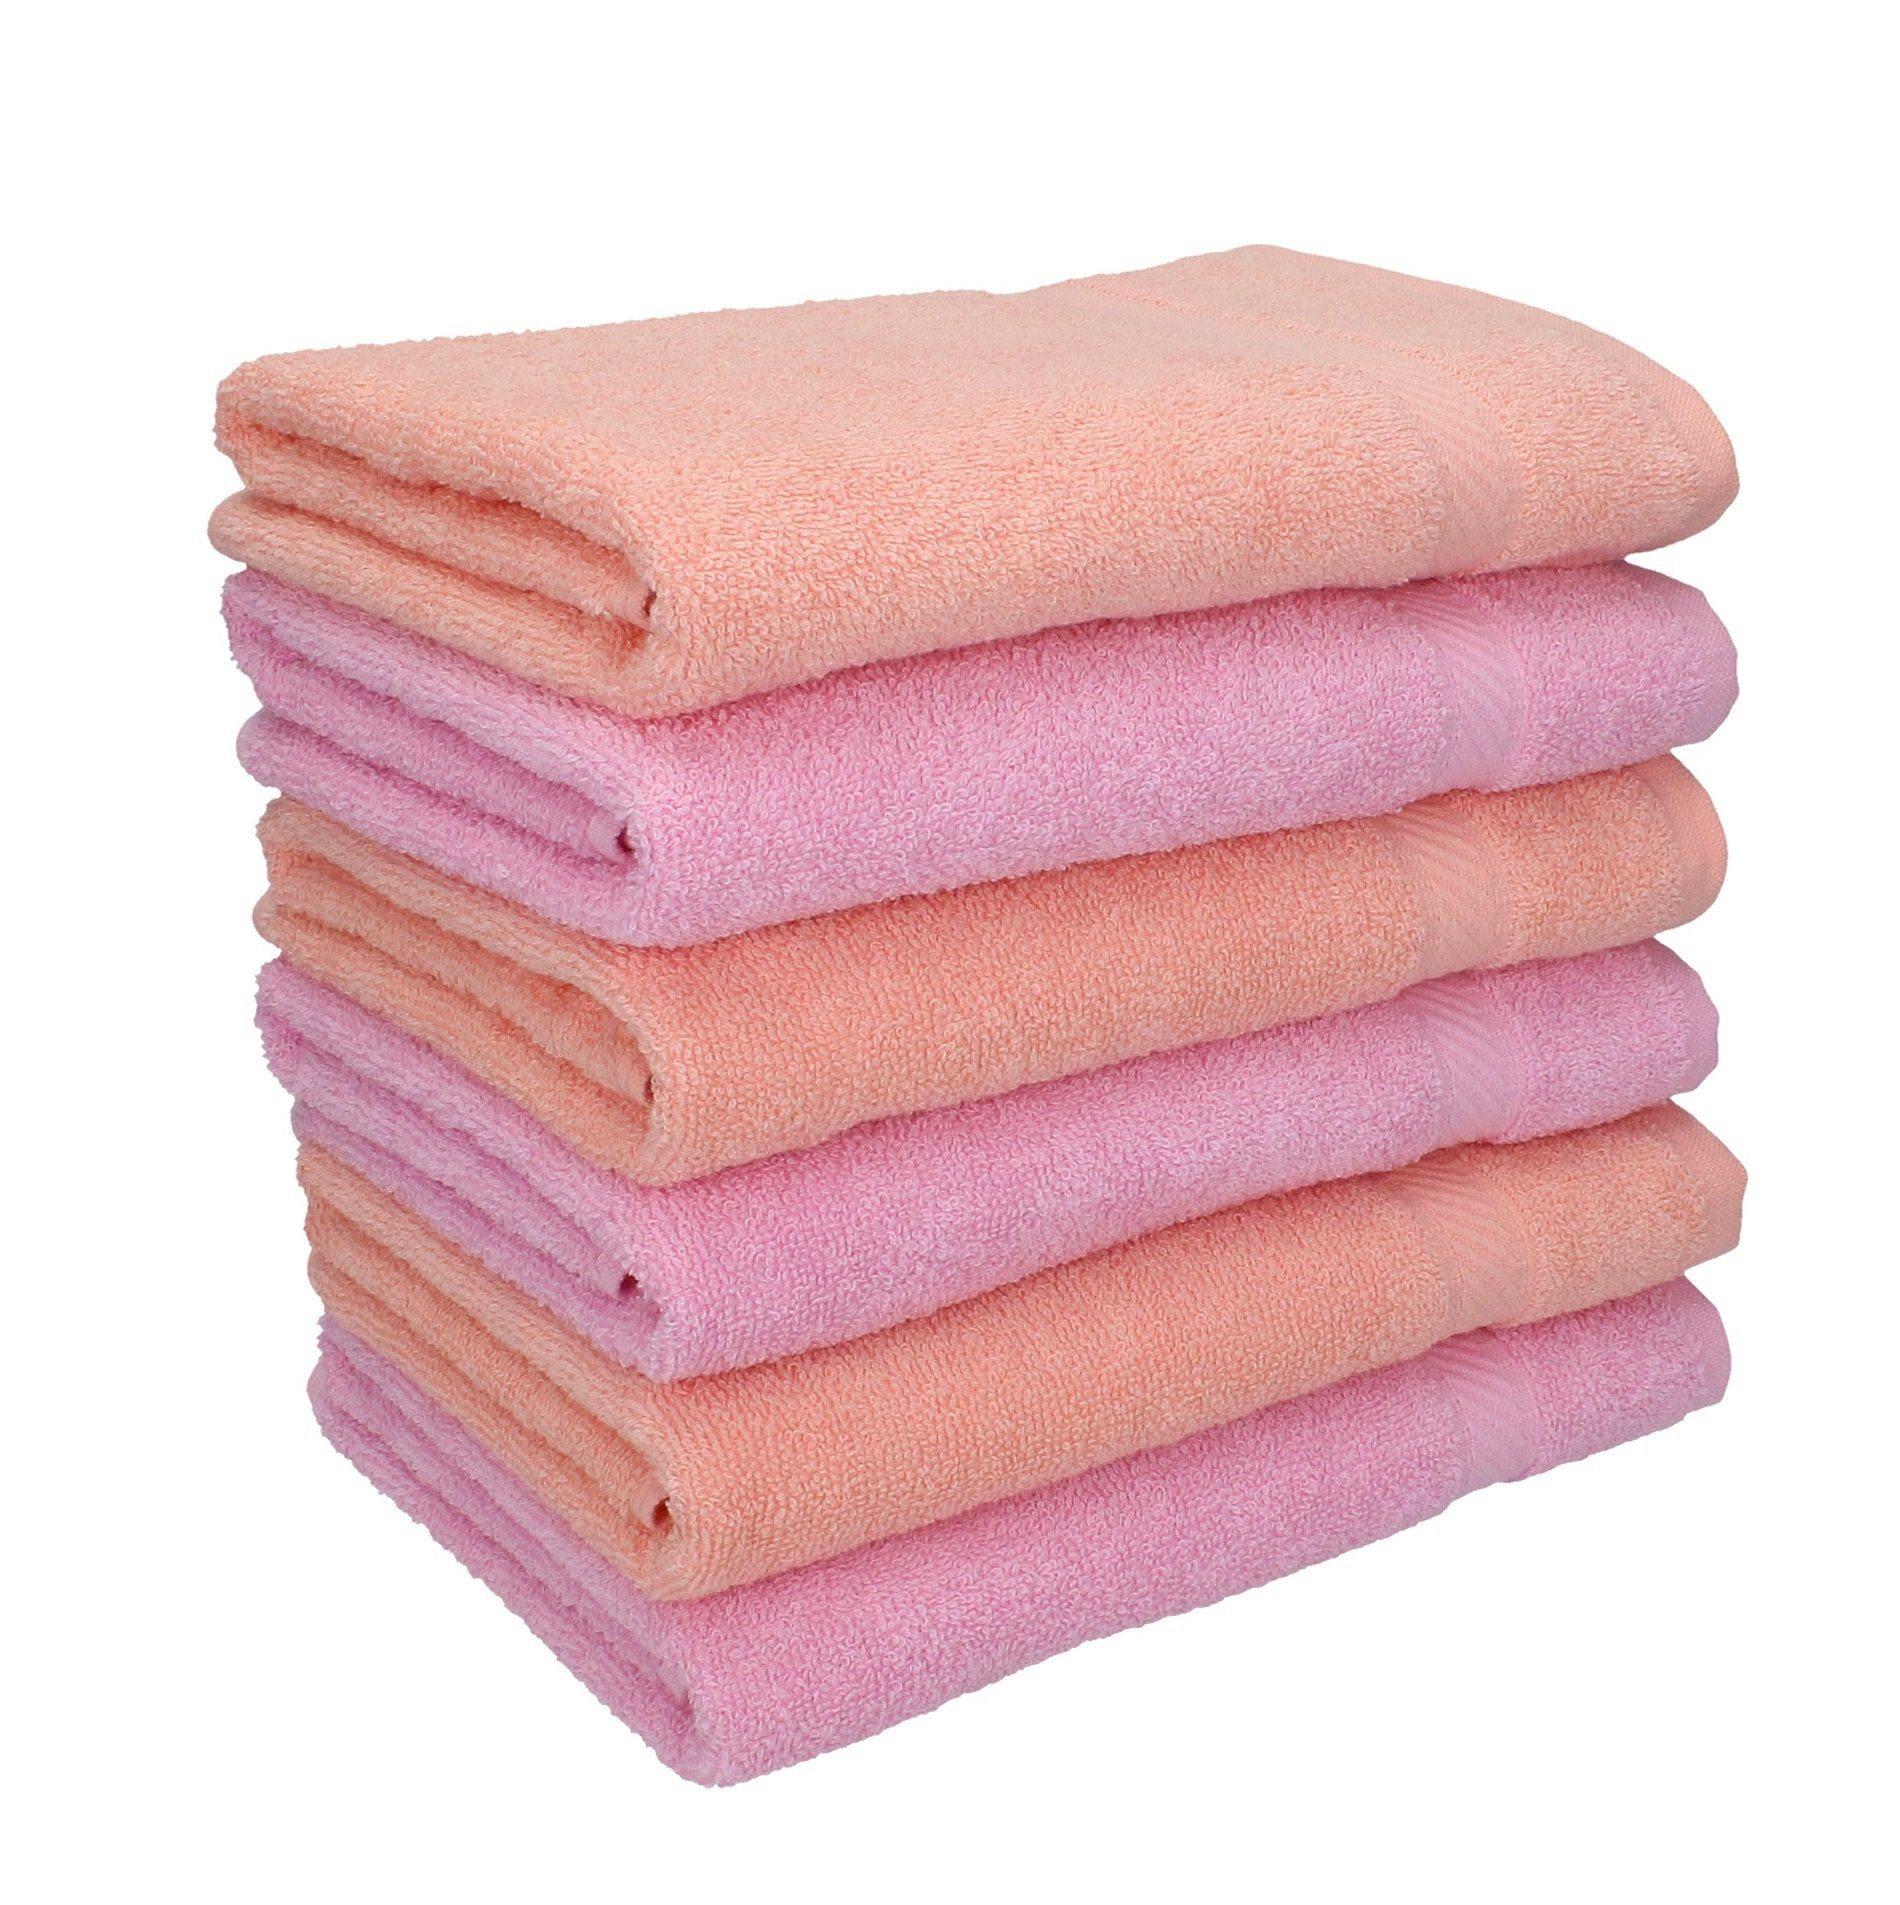 Betz Handtücher 6 Stück Handtücher Palermo Größe 50 x 100 cm Farbe apricot und rosé, 100% Baumwolle